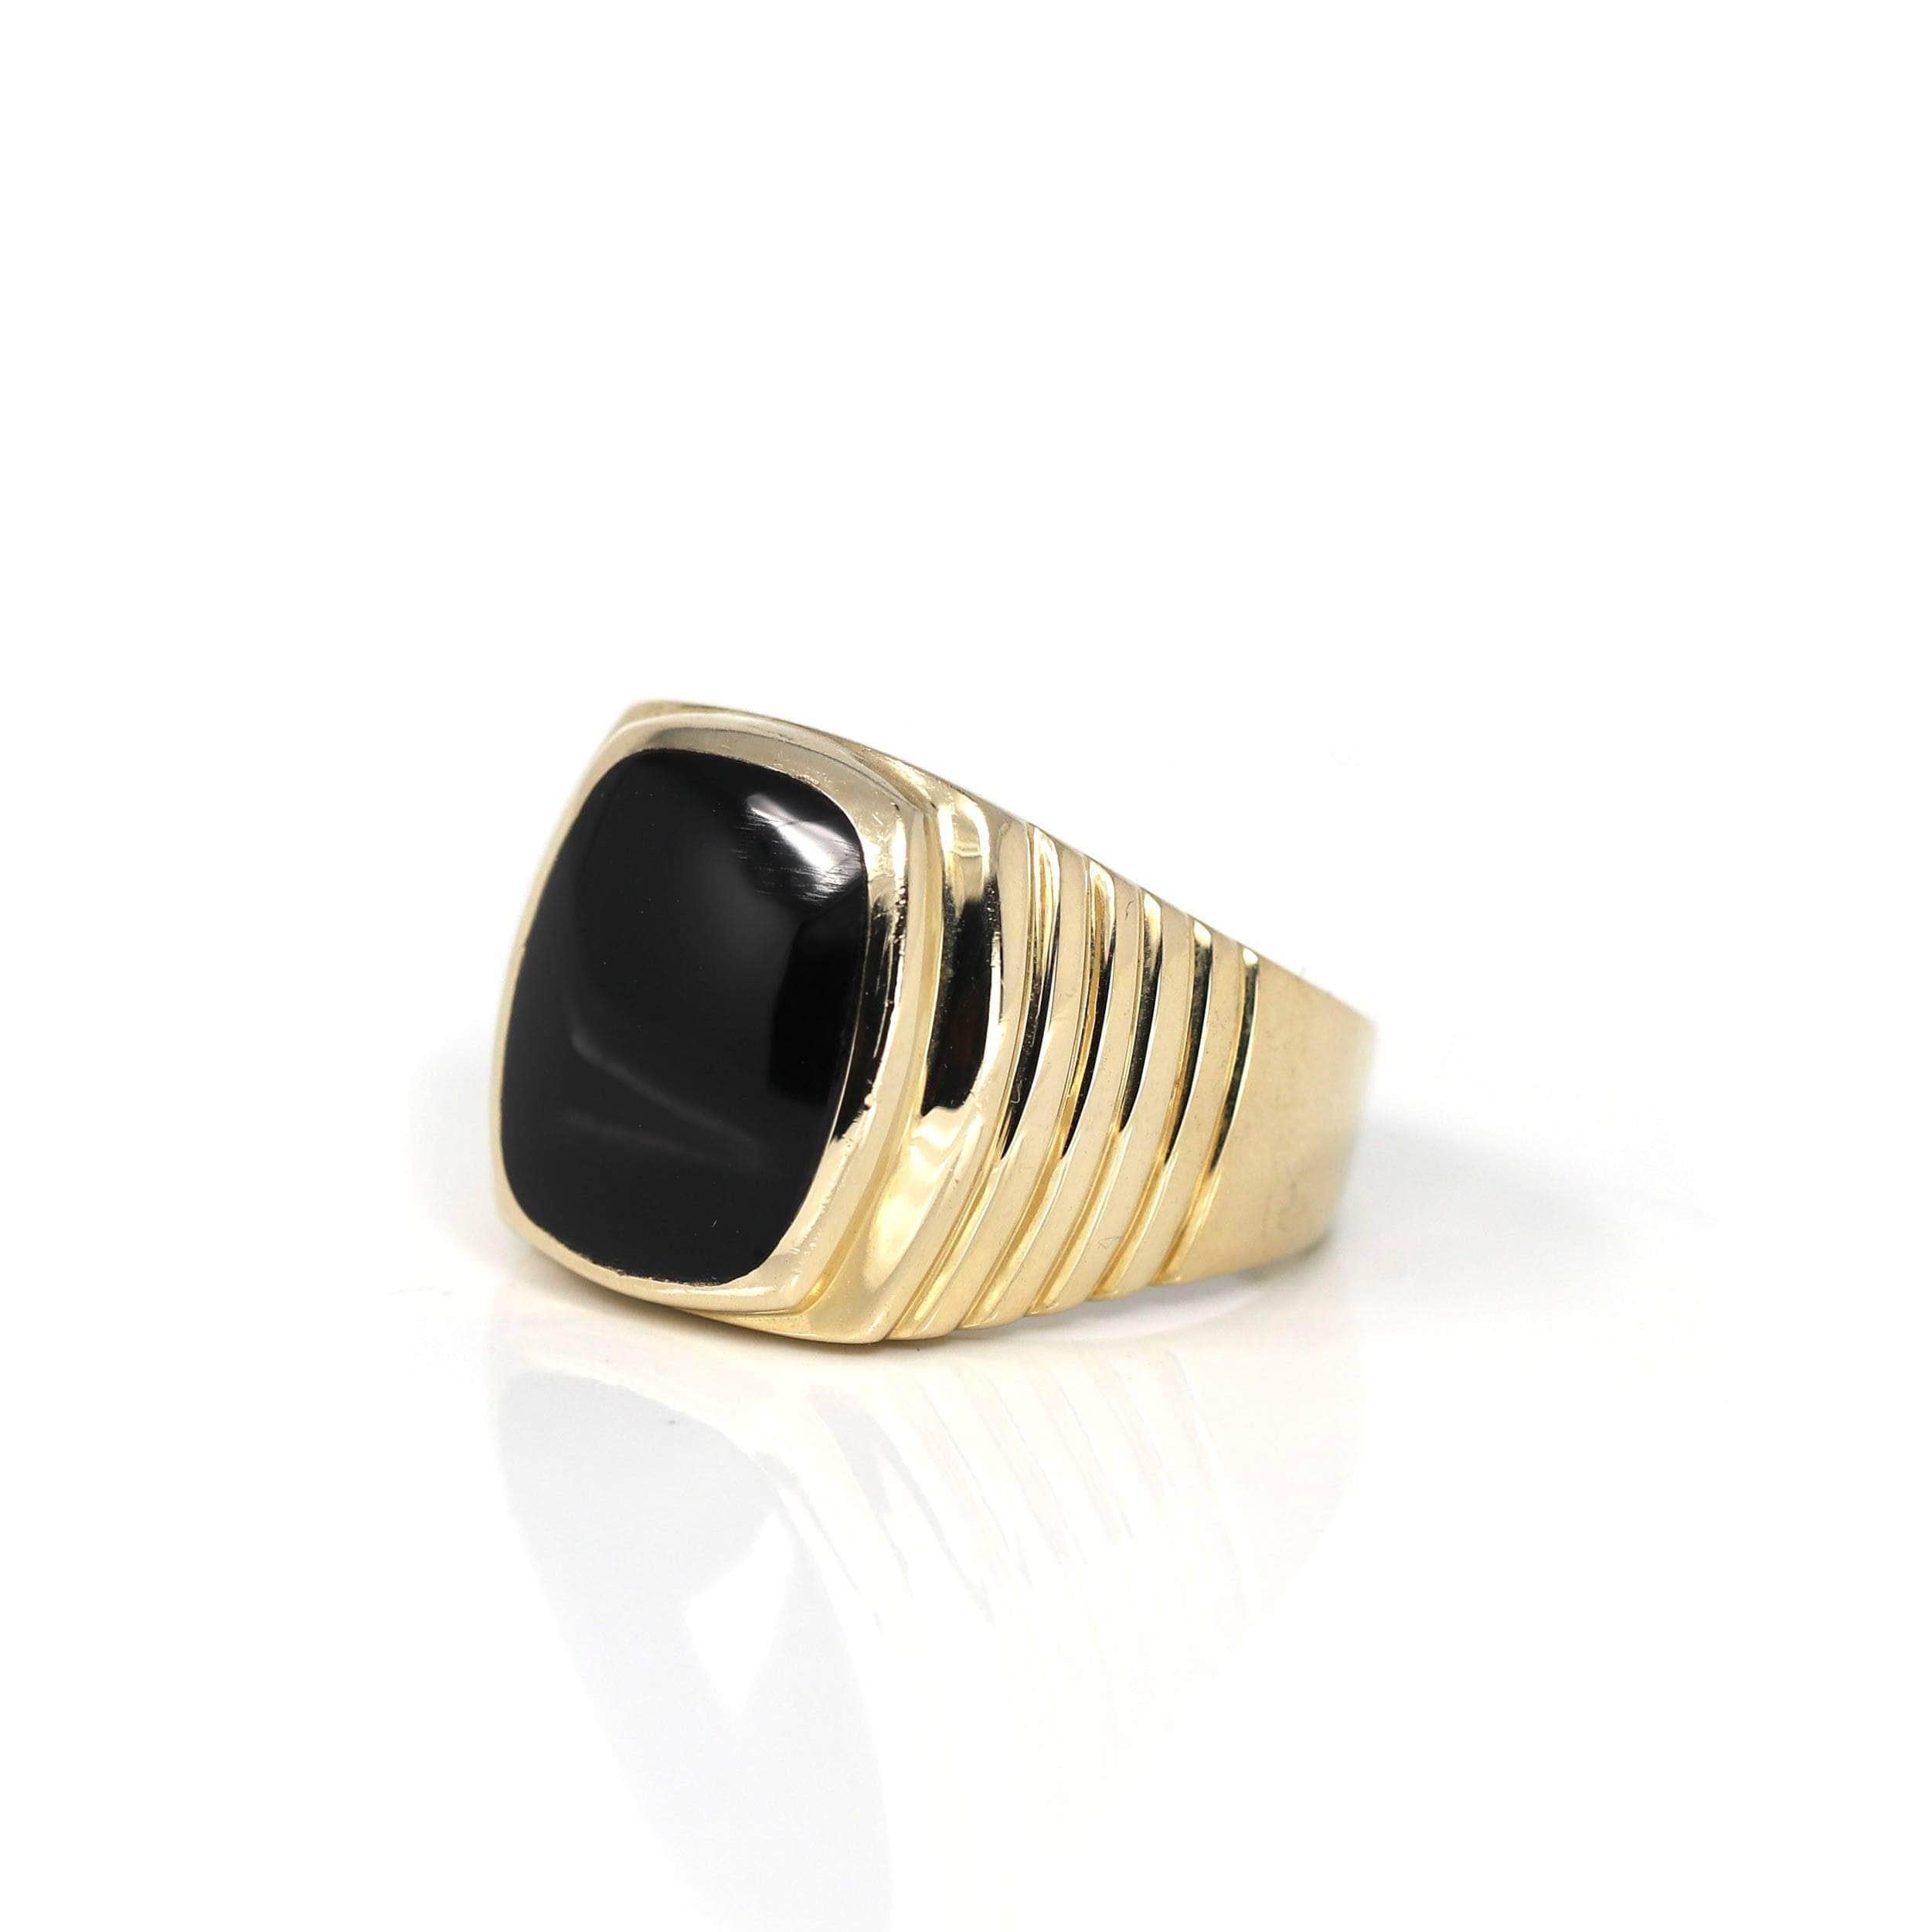 * Designkonzept--- Dieser Ring ist mit einem Cabochon aus echtem schwarzem Onyx AA besetzt. Das Design ist sehr einfach gehalten. Der Ring sieht sehr exquisit aus. Die Kunsthandwerker von Baikalla haben es sich zur Aufgabe gemacht, schöne Edelsteine